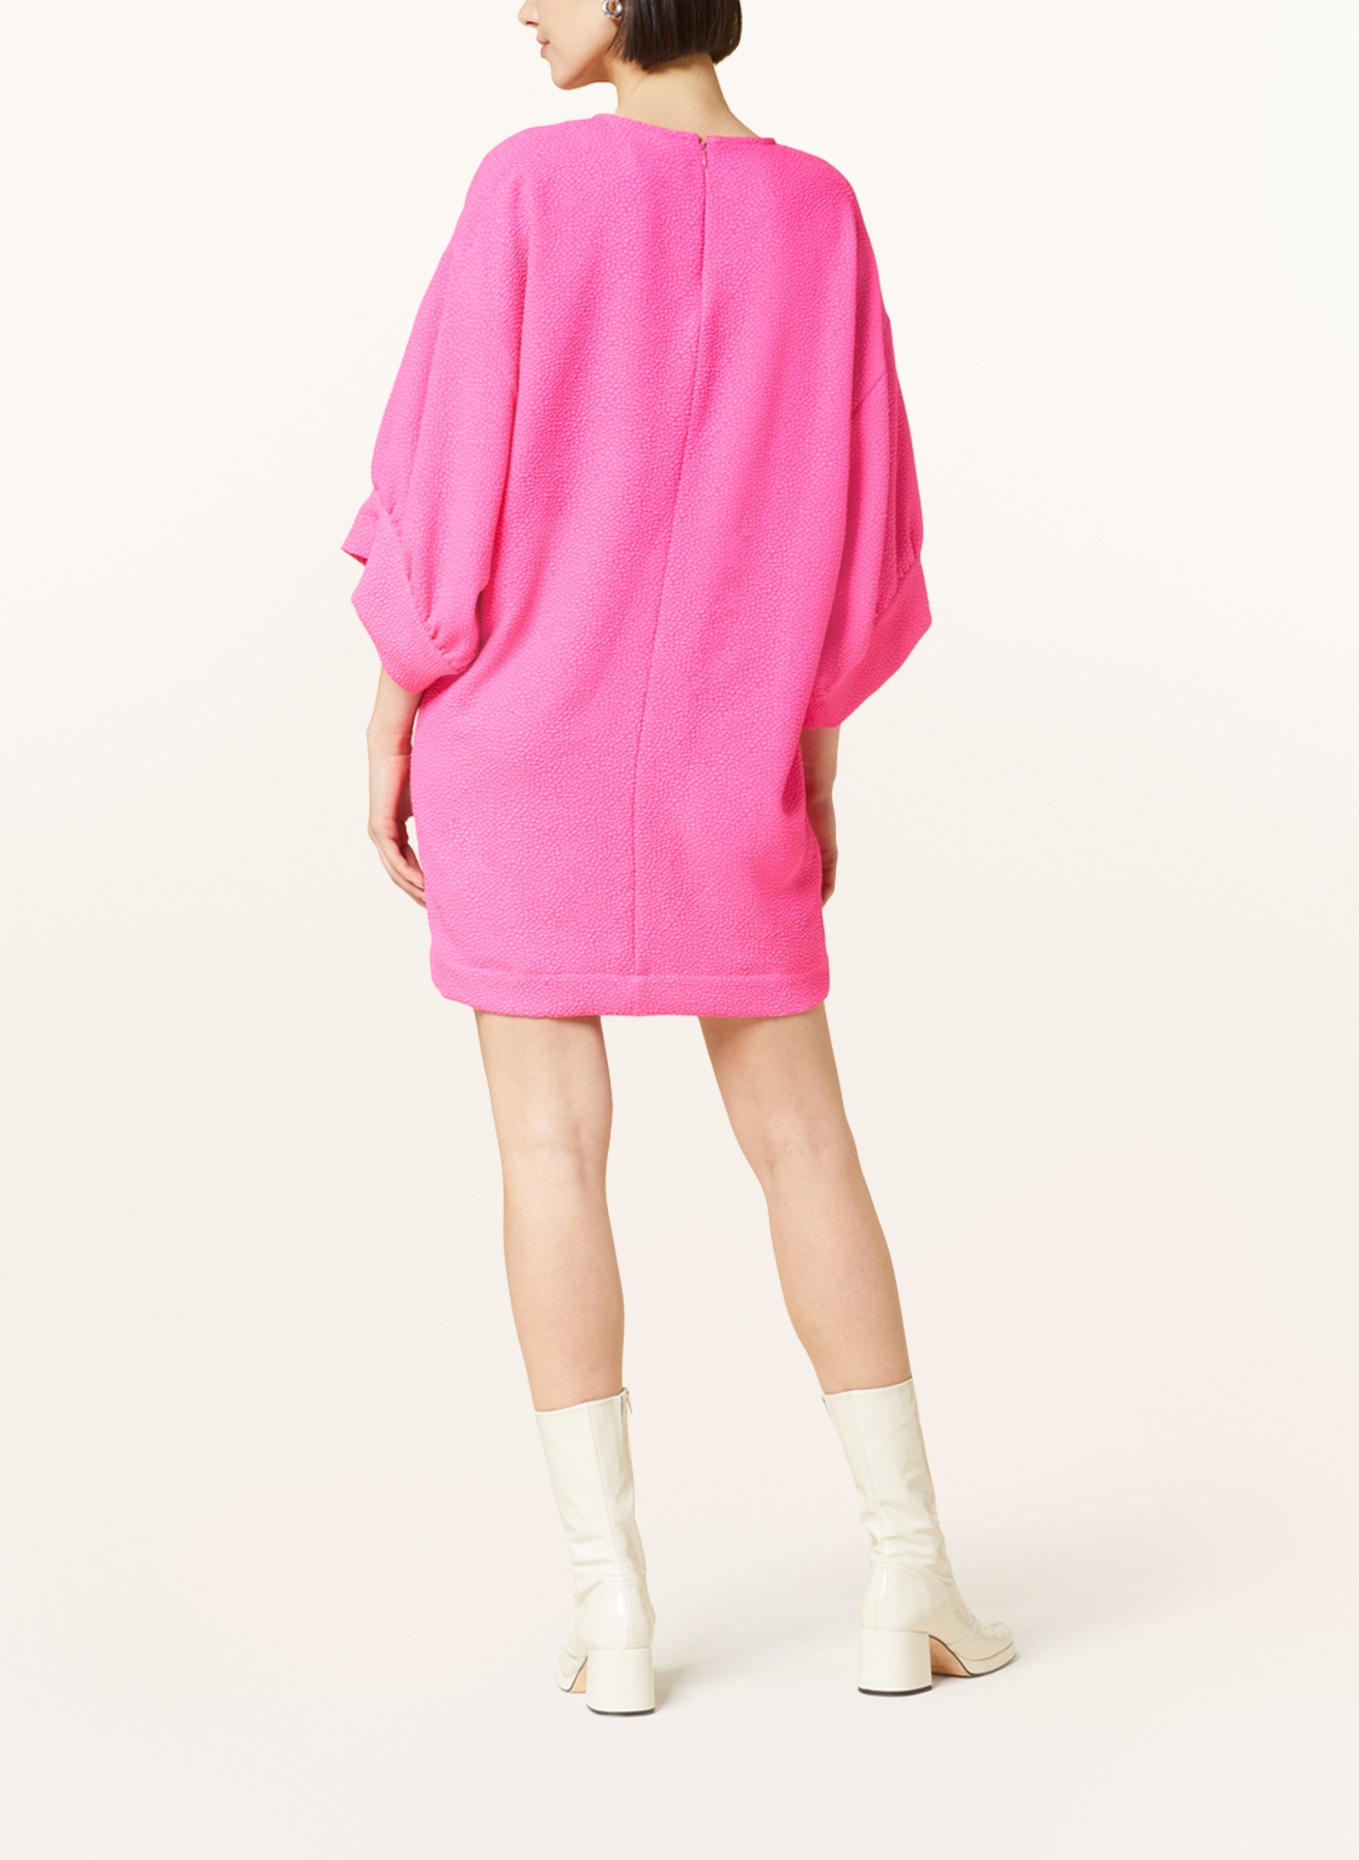 ESSENTIEL ANTWERP Kleid ESUPPLE mit 3/4-Arm, Farbe: PINK (Bild 3)